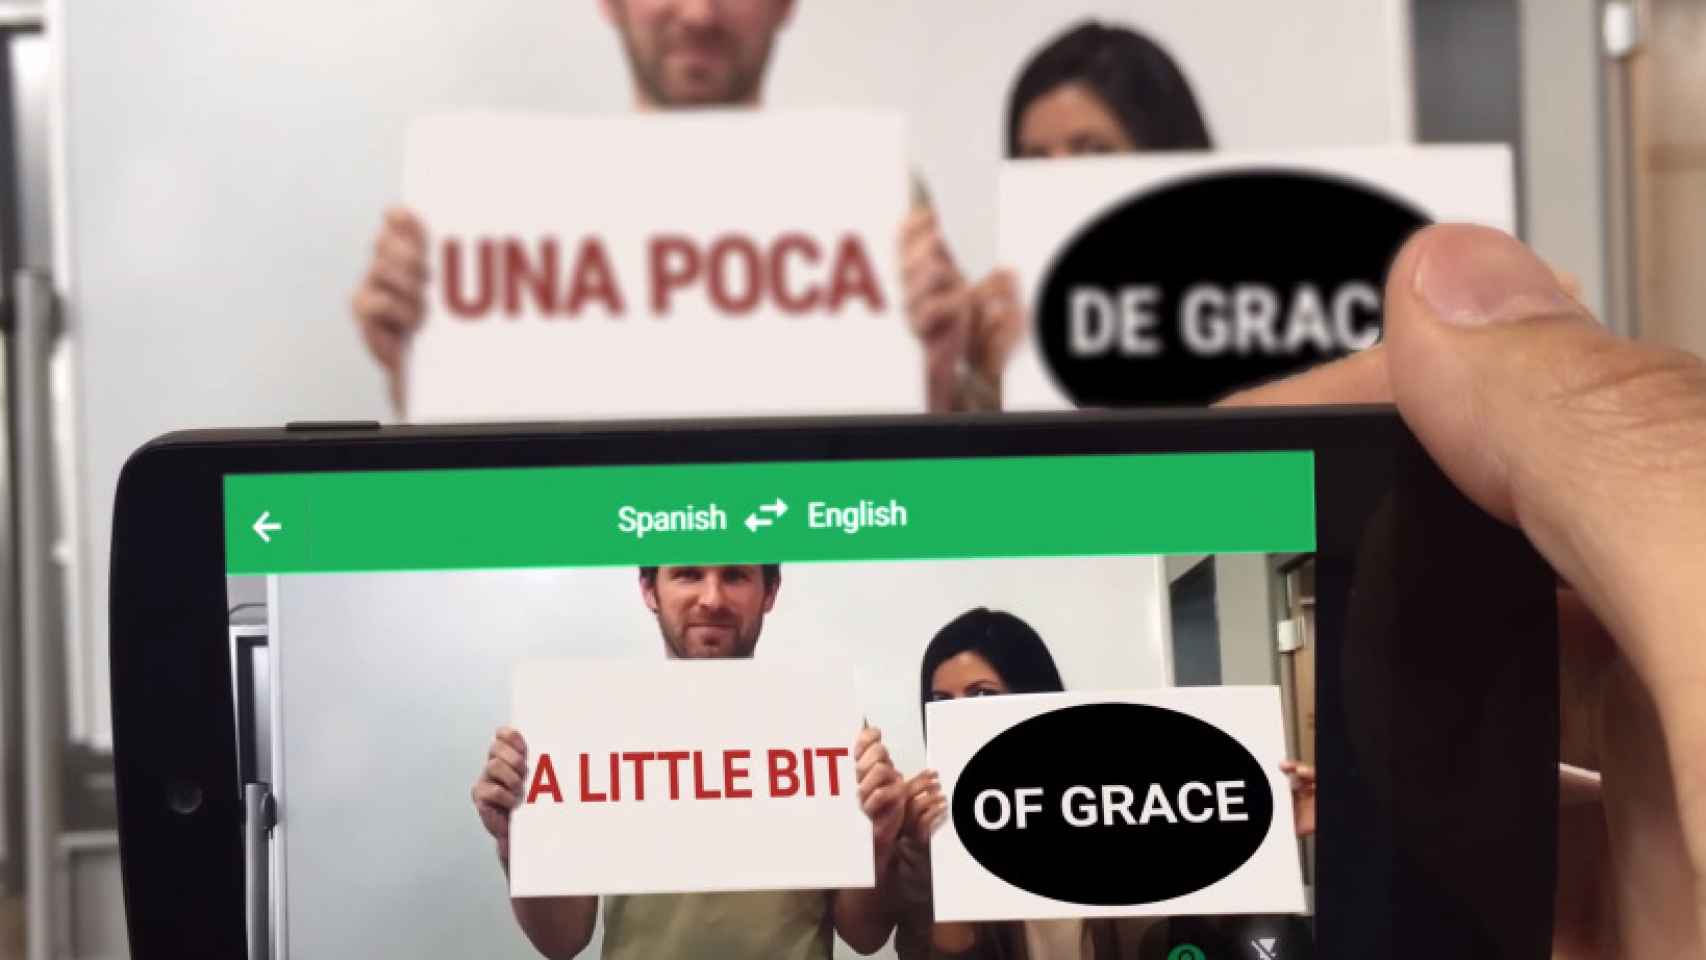 Google Translate ahora traduce imágenes en 20 idiomas más [APK]